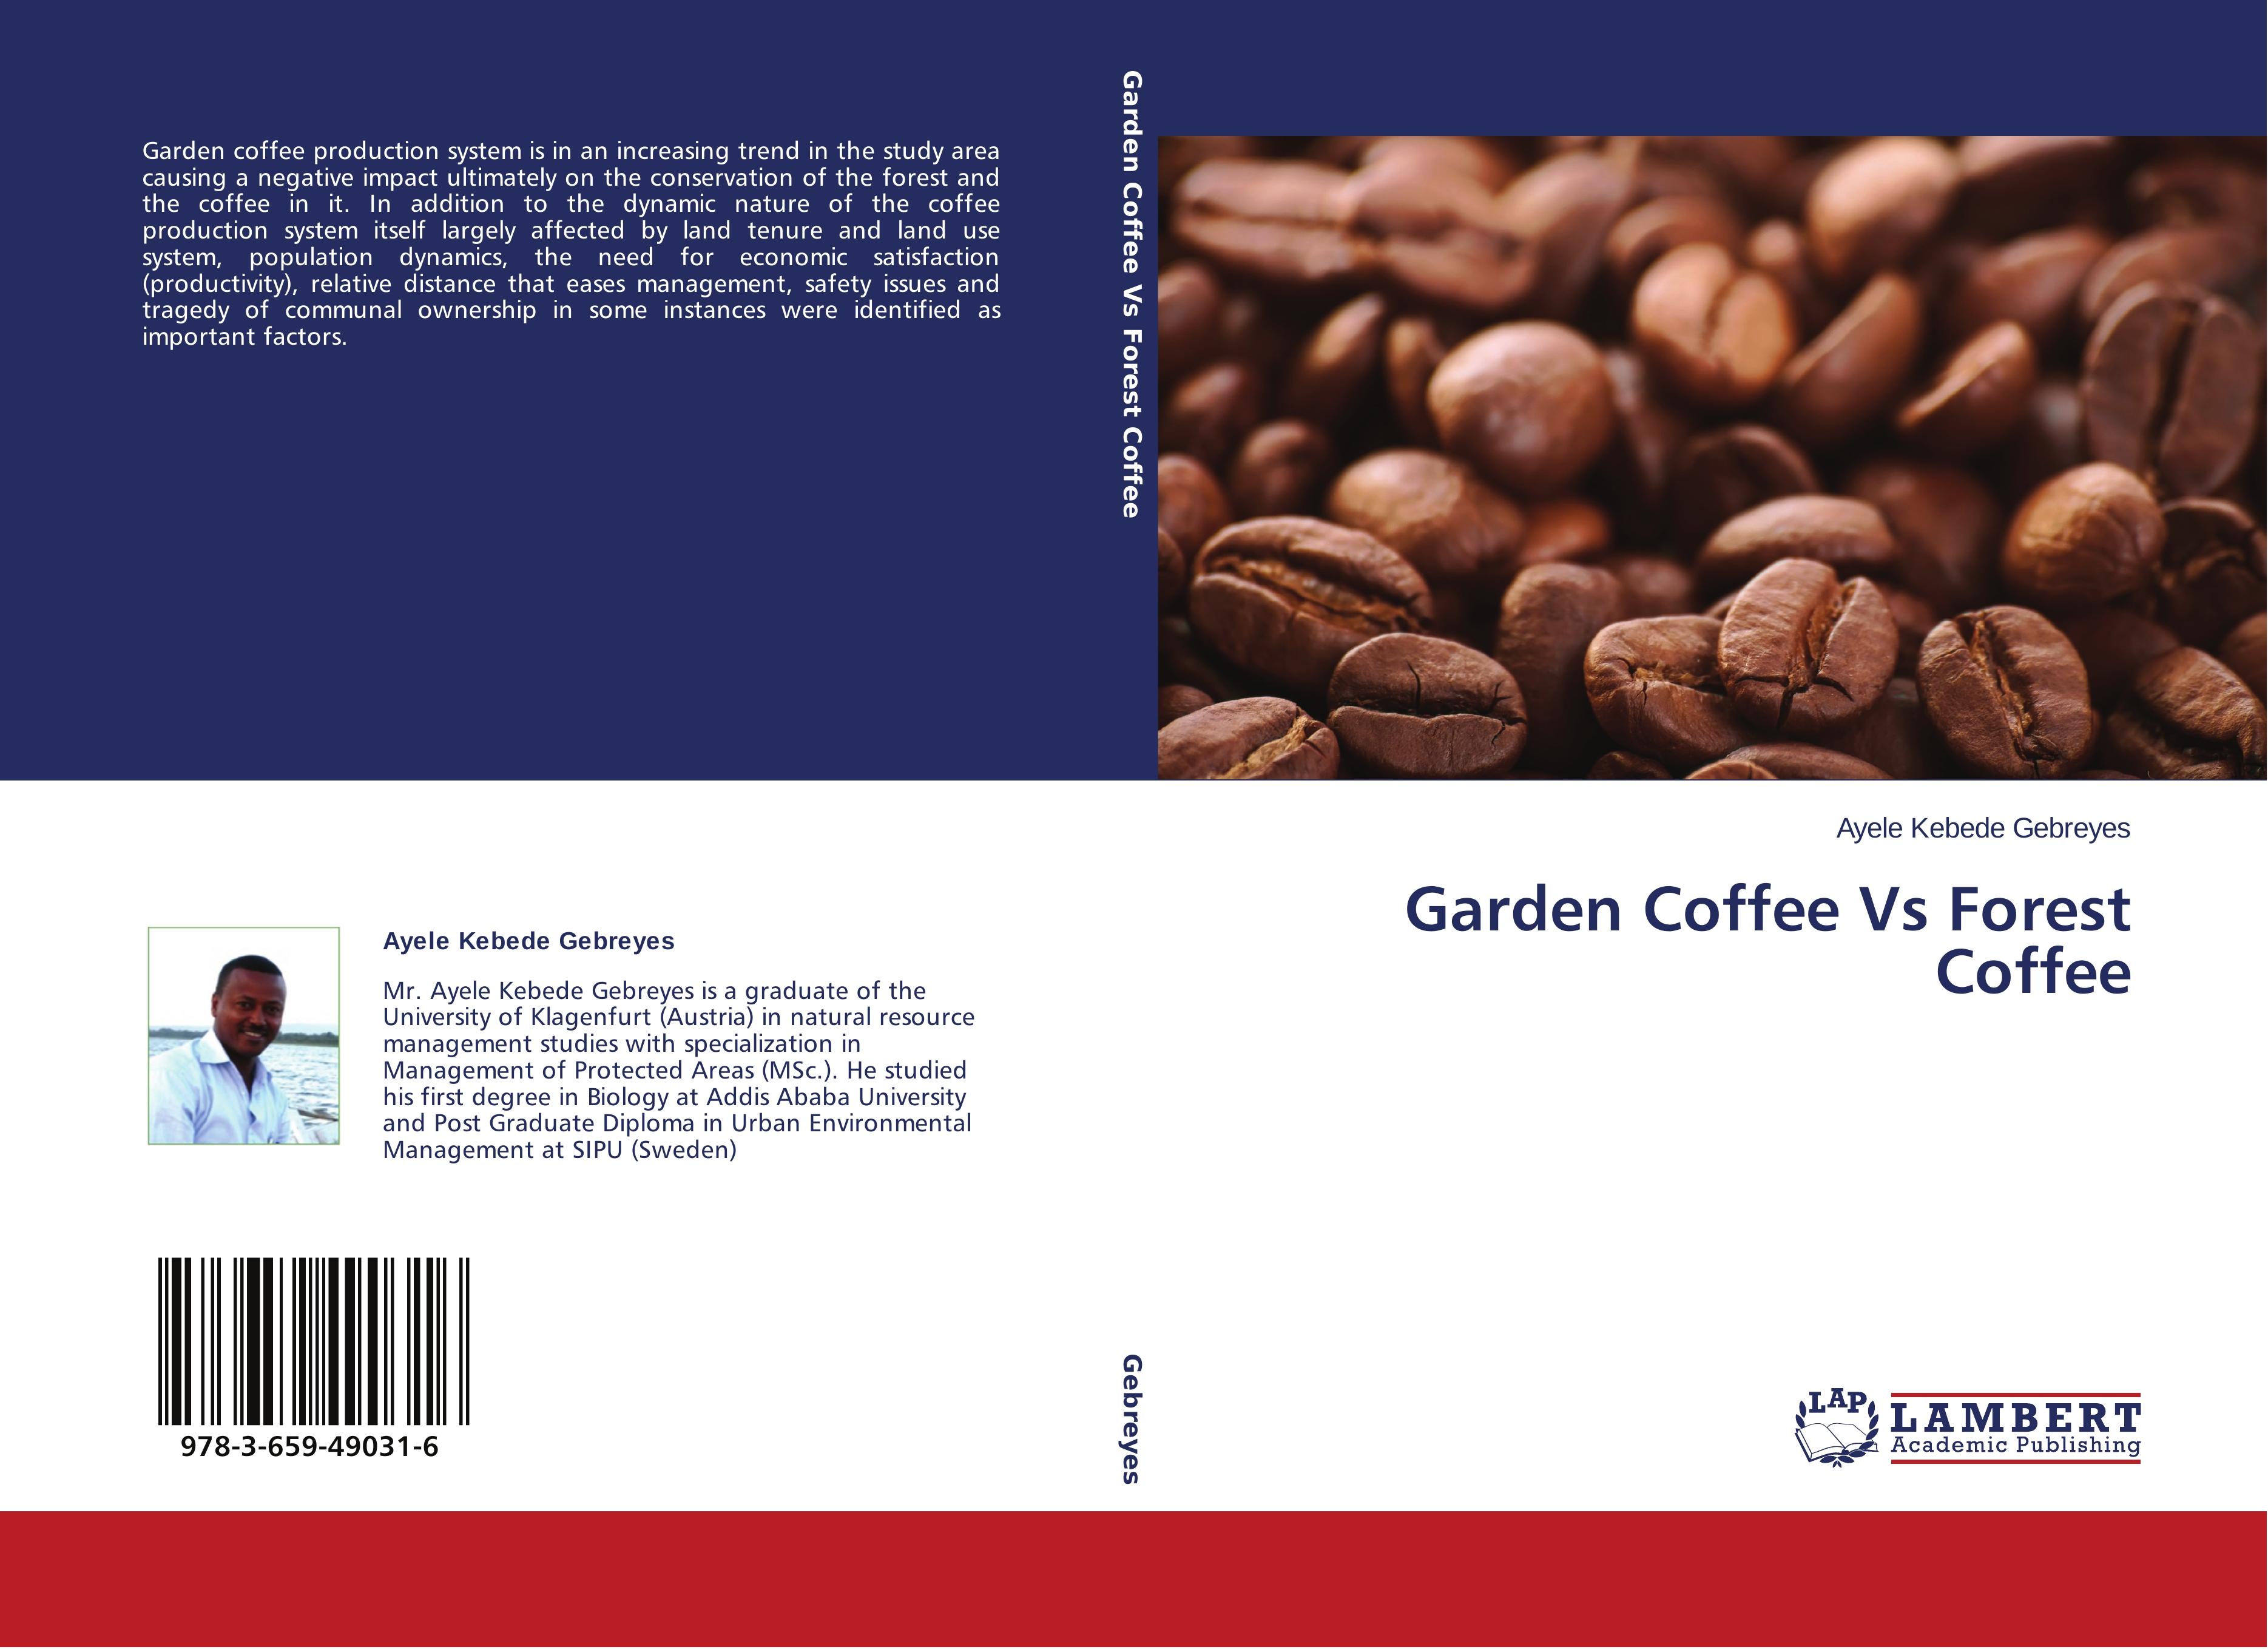 Garden Coffee Vs Forest Coffee - Ayele Kebede Gebreyes